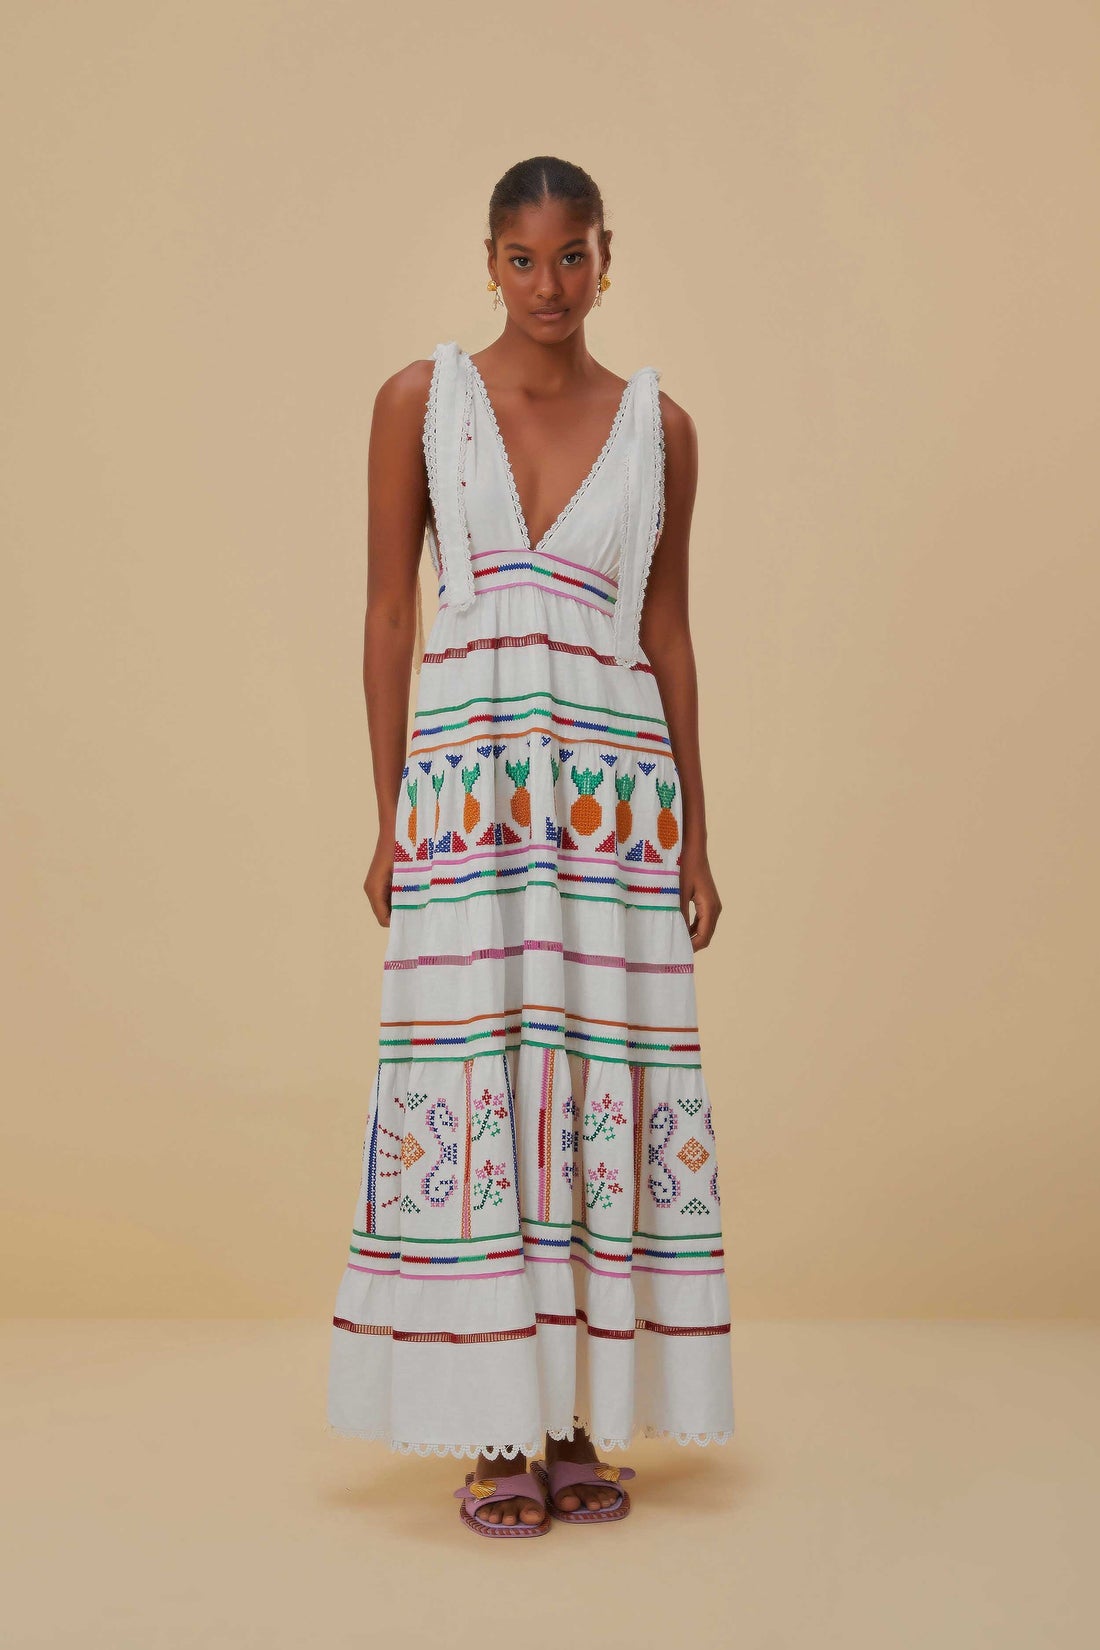 Zara + Block Color Slip Dress